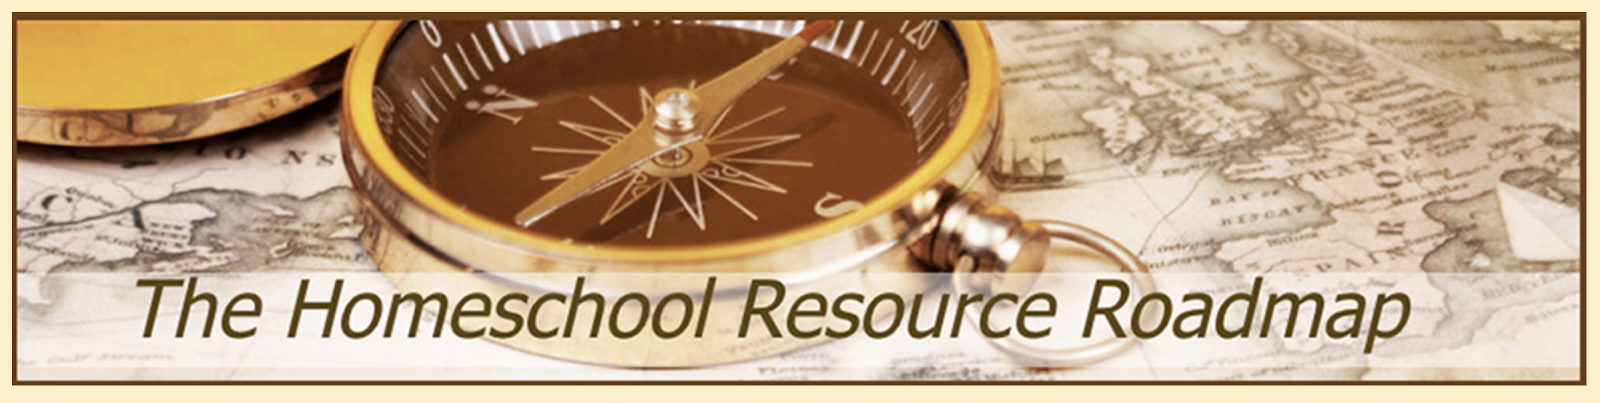 The Homeschool Resource Roadmap